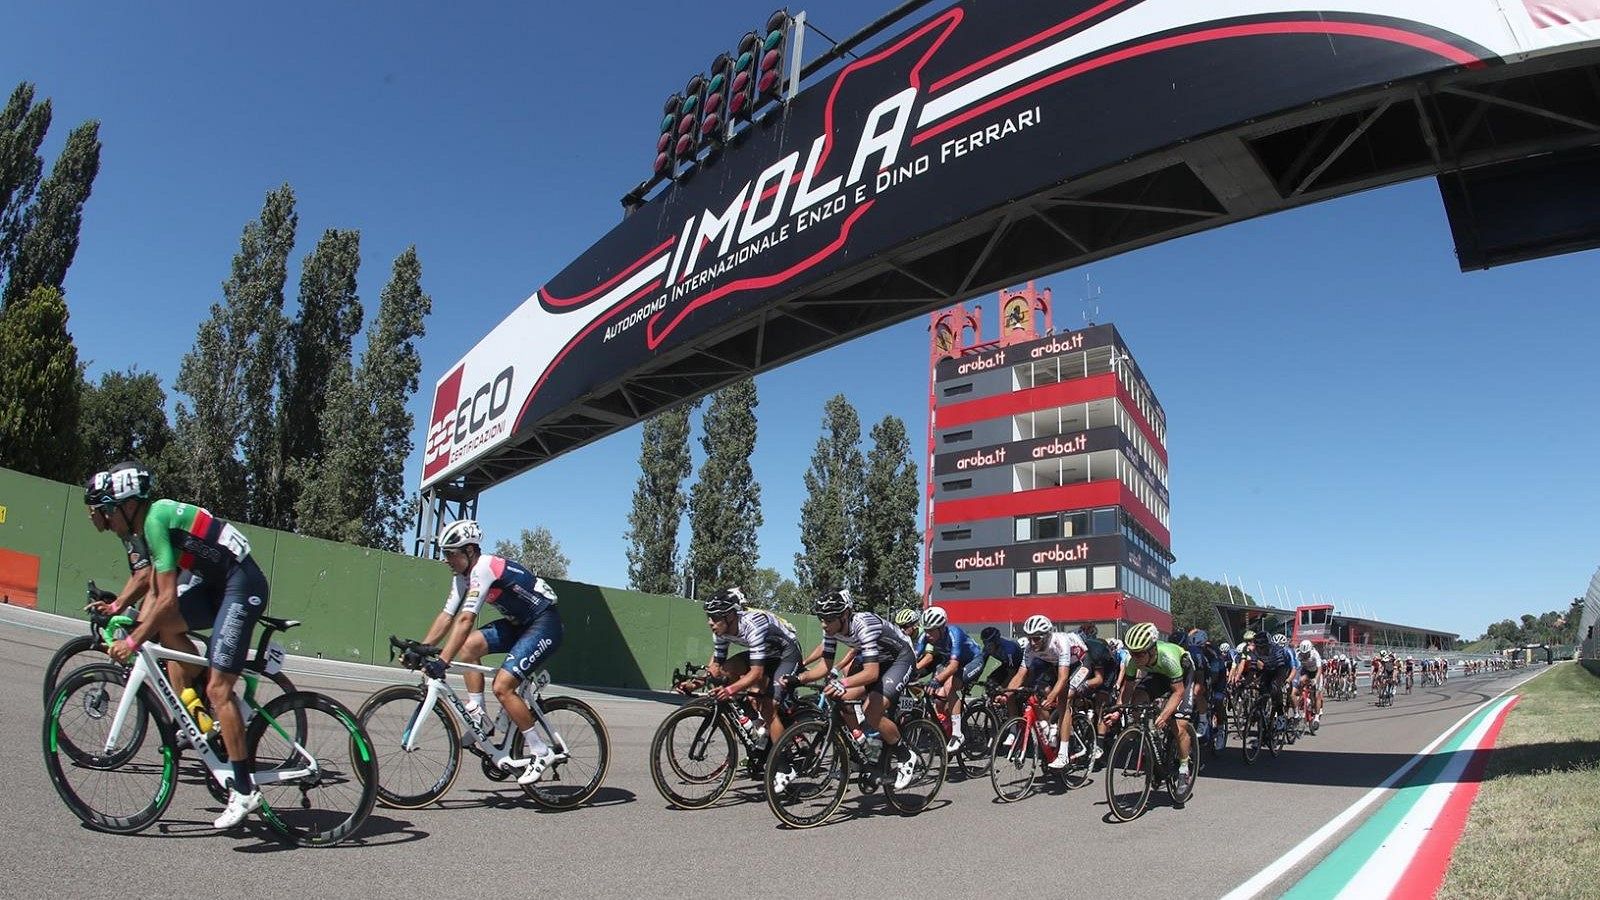 El circuito de Imola acogerá los Mundiales de ciclismo.